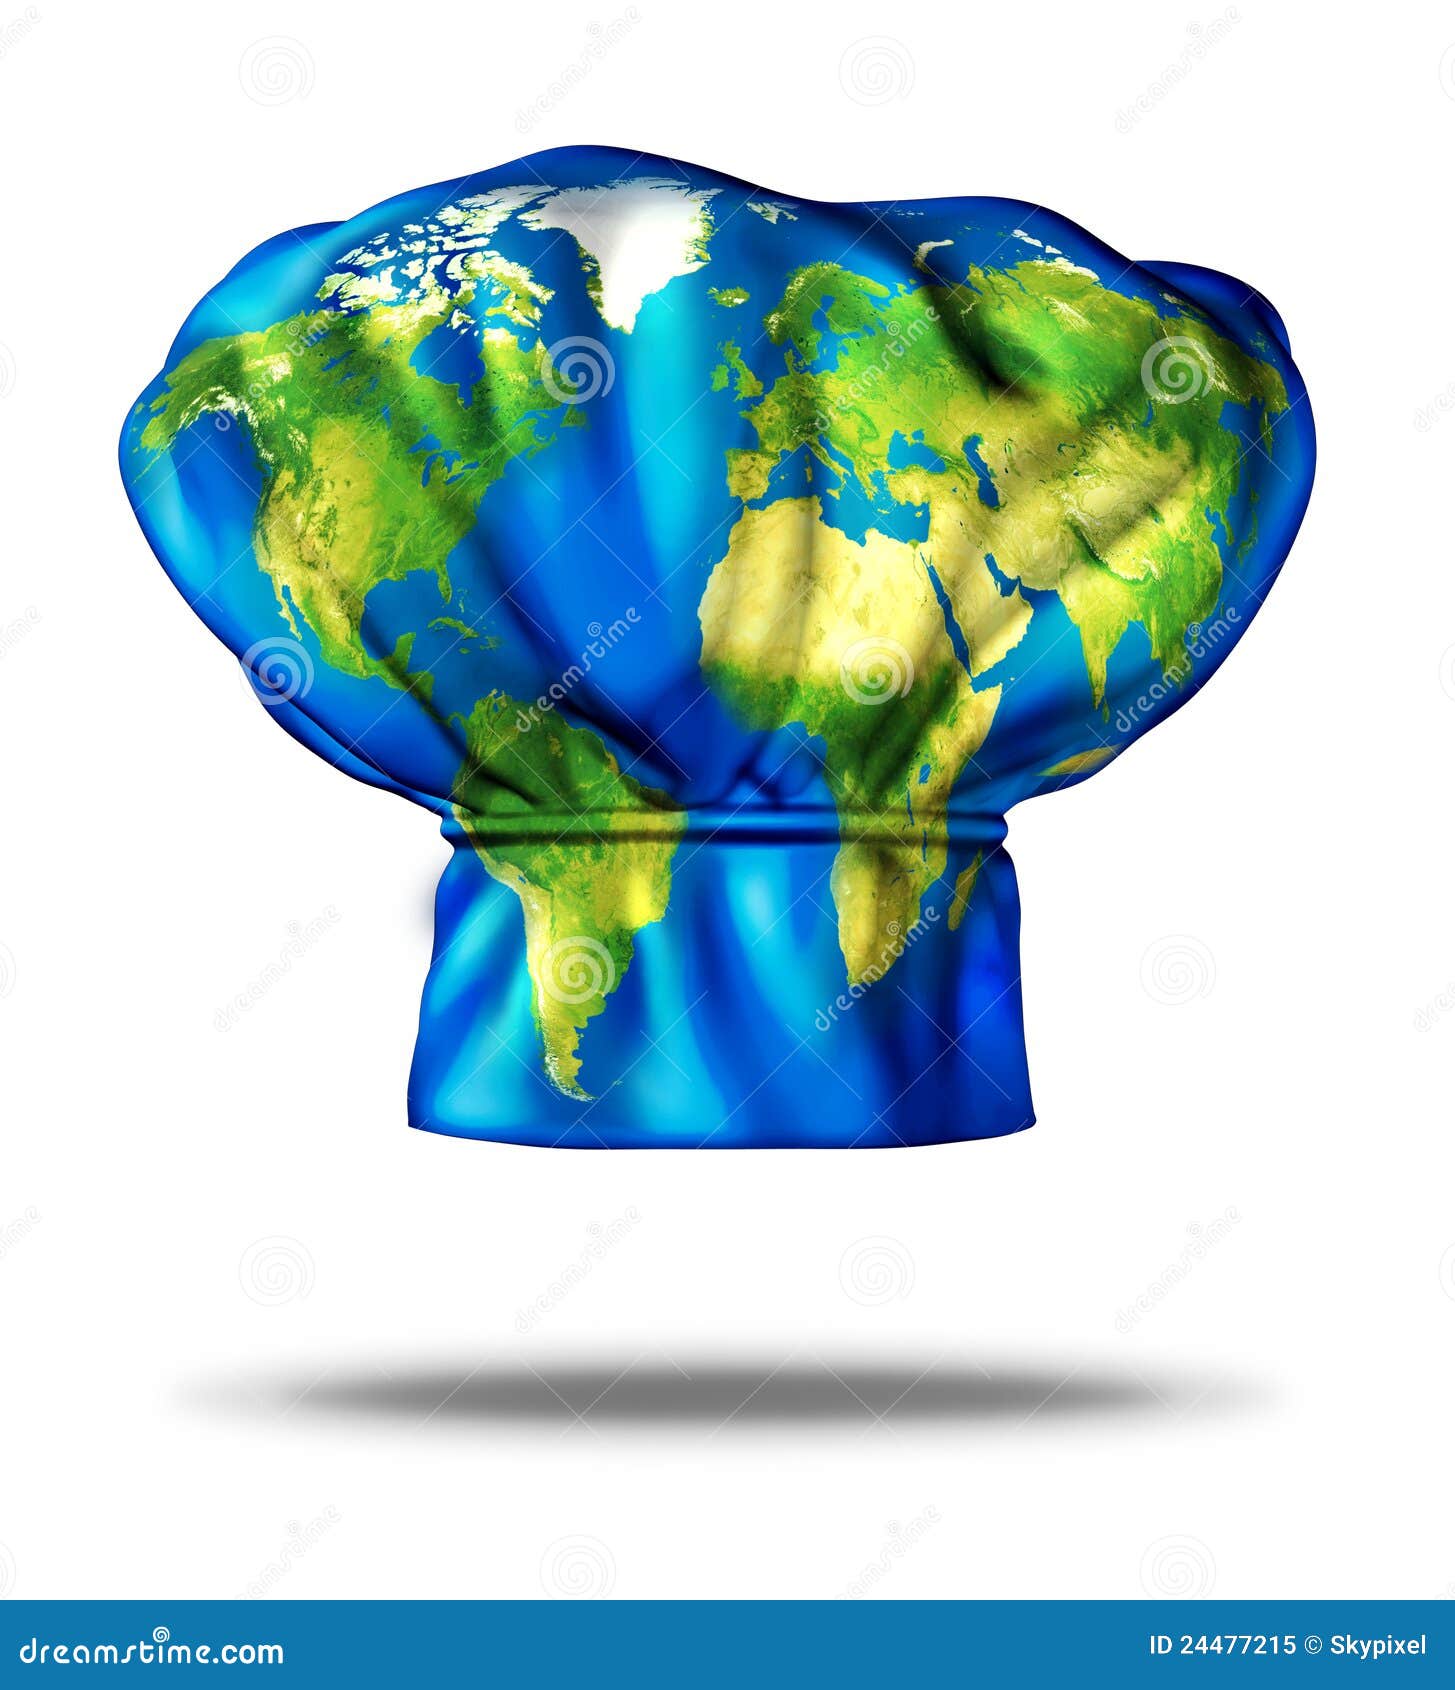 World Cuisine stock illustration. Illustration of eating ...